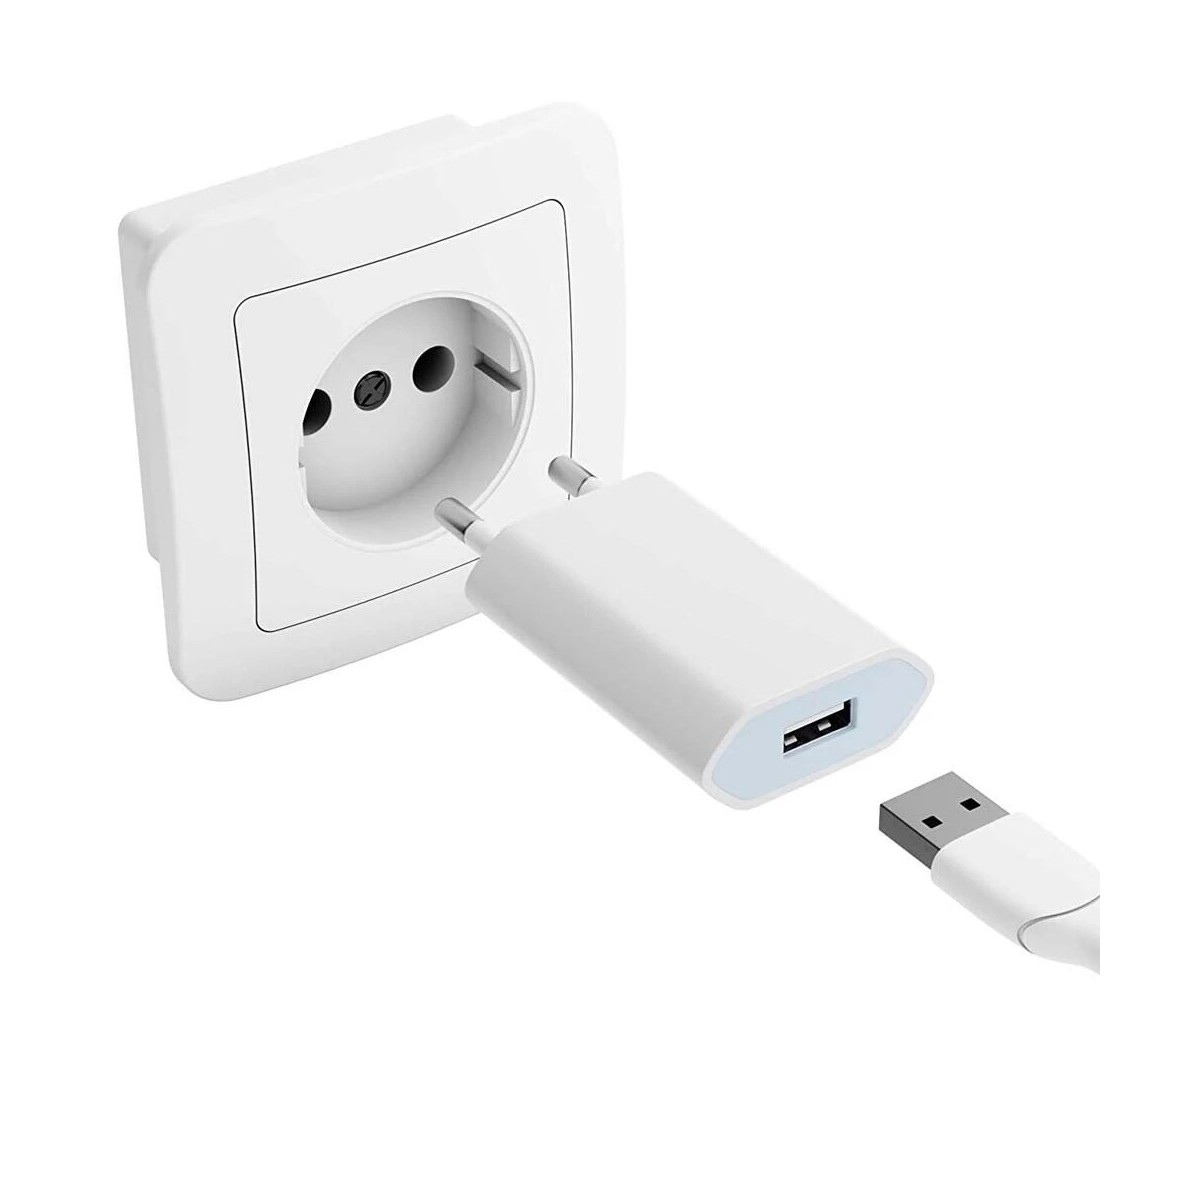 Chargeur Go4U Secteur et Cable USB pour iPhone 5/5S